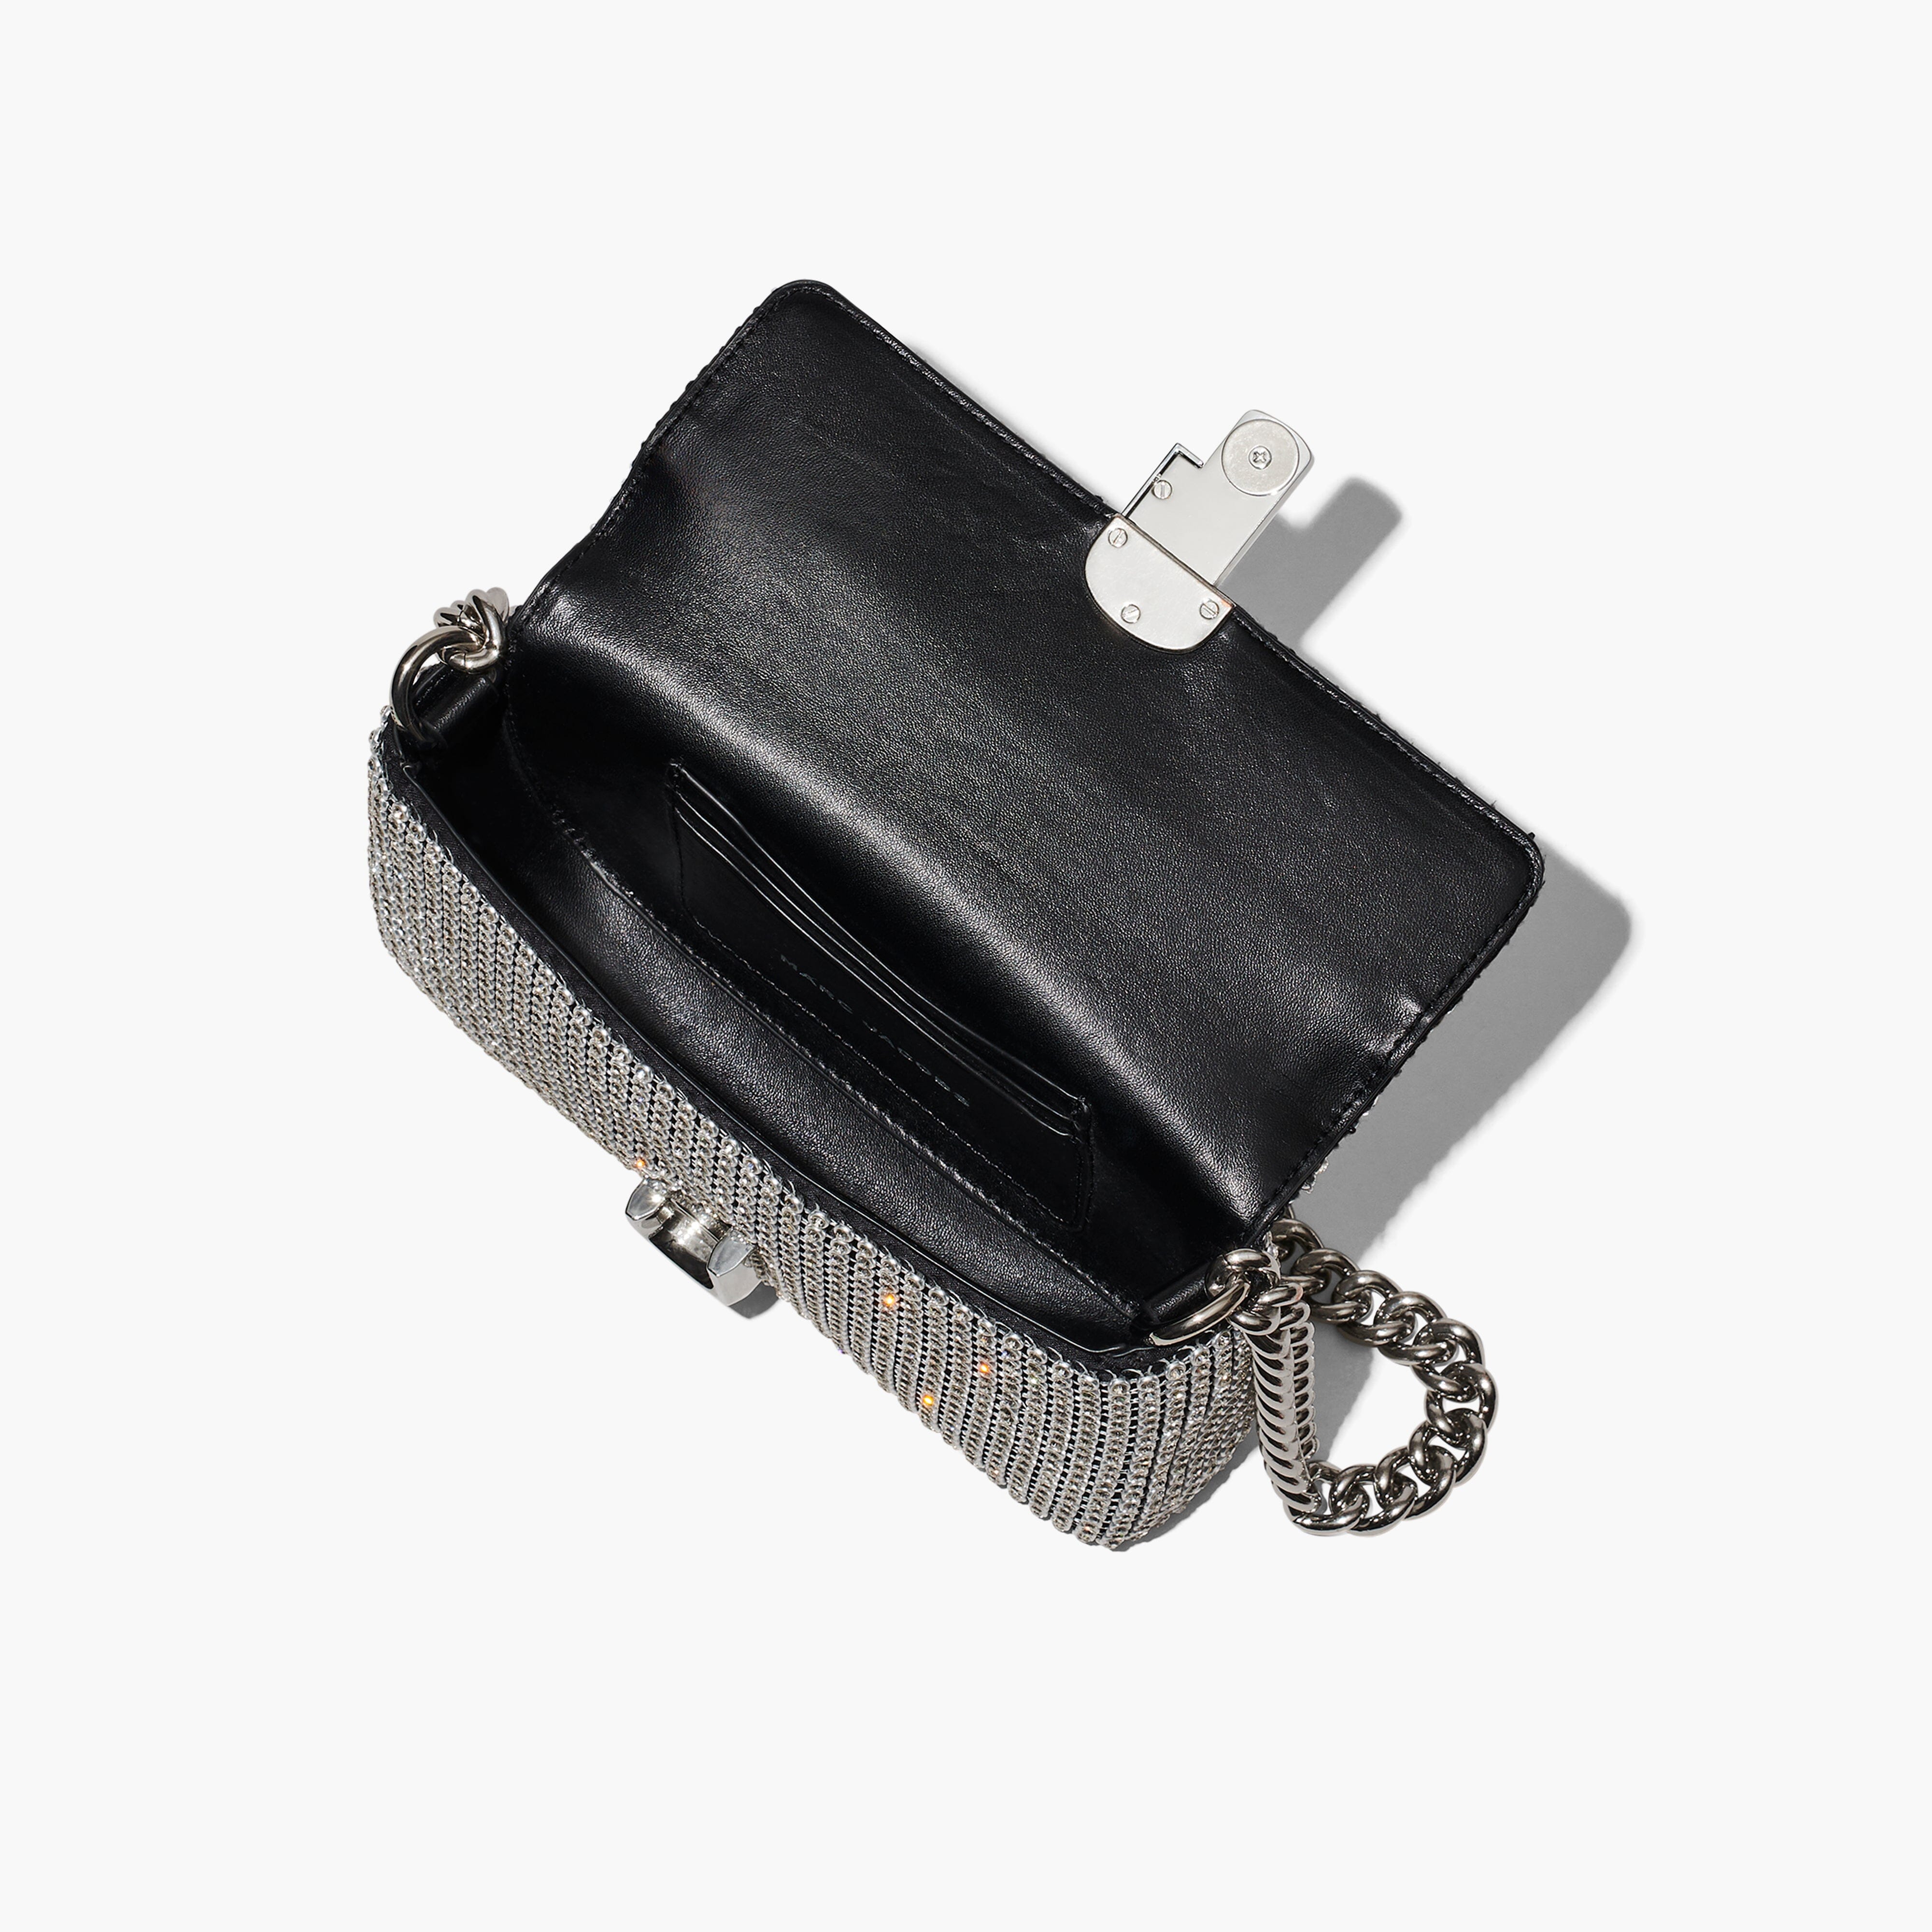 MARC JACOBS - H912 M06RE22 - 991 - Mini Shoulder Bag - Crystal Borse Marc Jacobs 